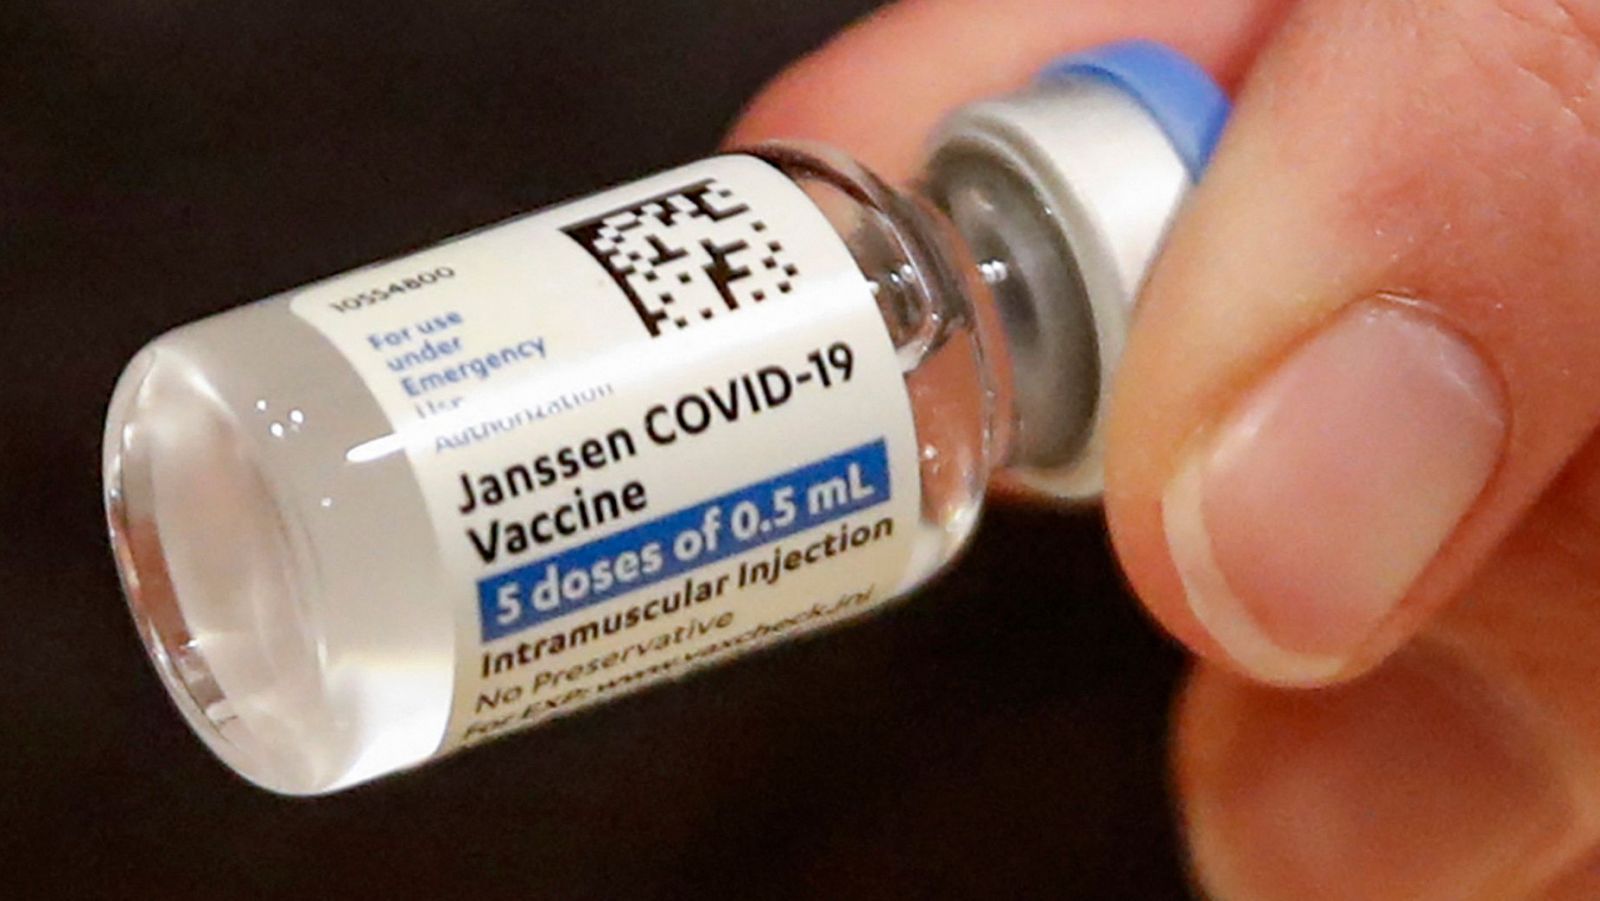 COVID-19: La EMA avala la utilización de la vacuna de Janssen